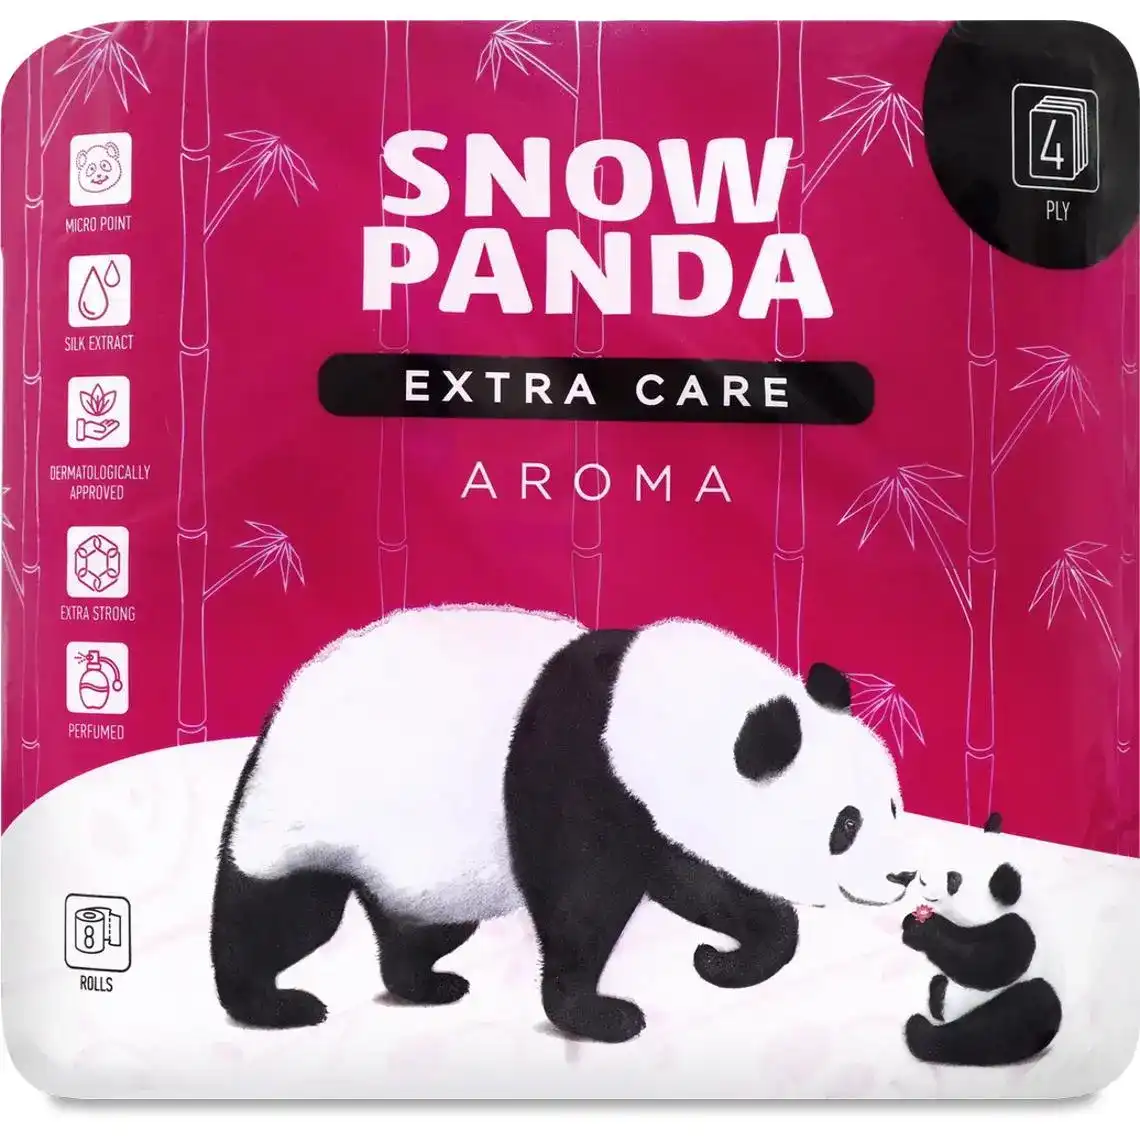 Бумага туалетная Снежная панда Extra care Aroma 4 слоя 8 шт